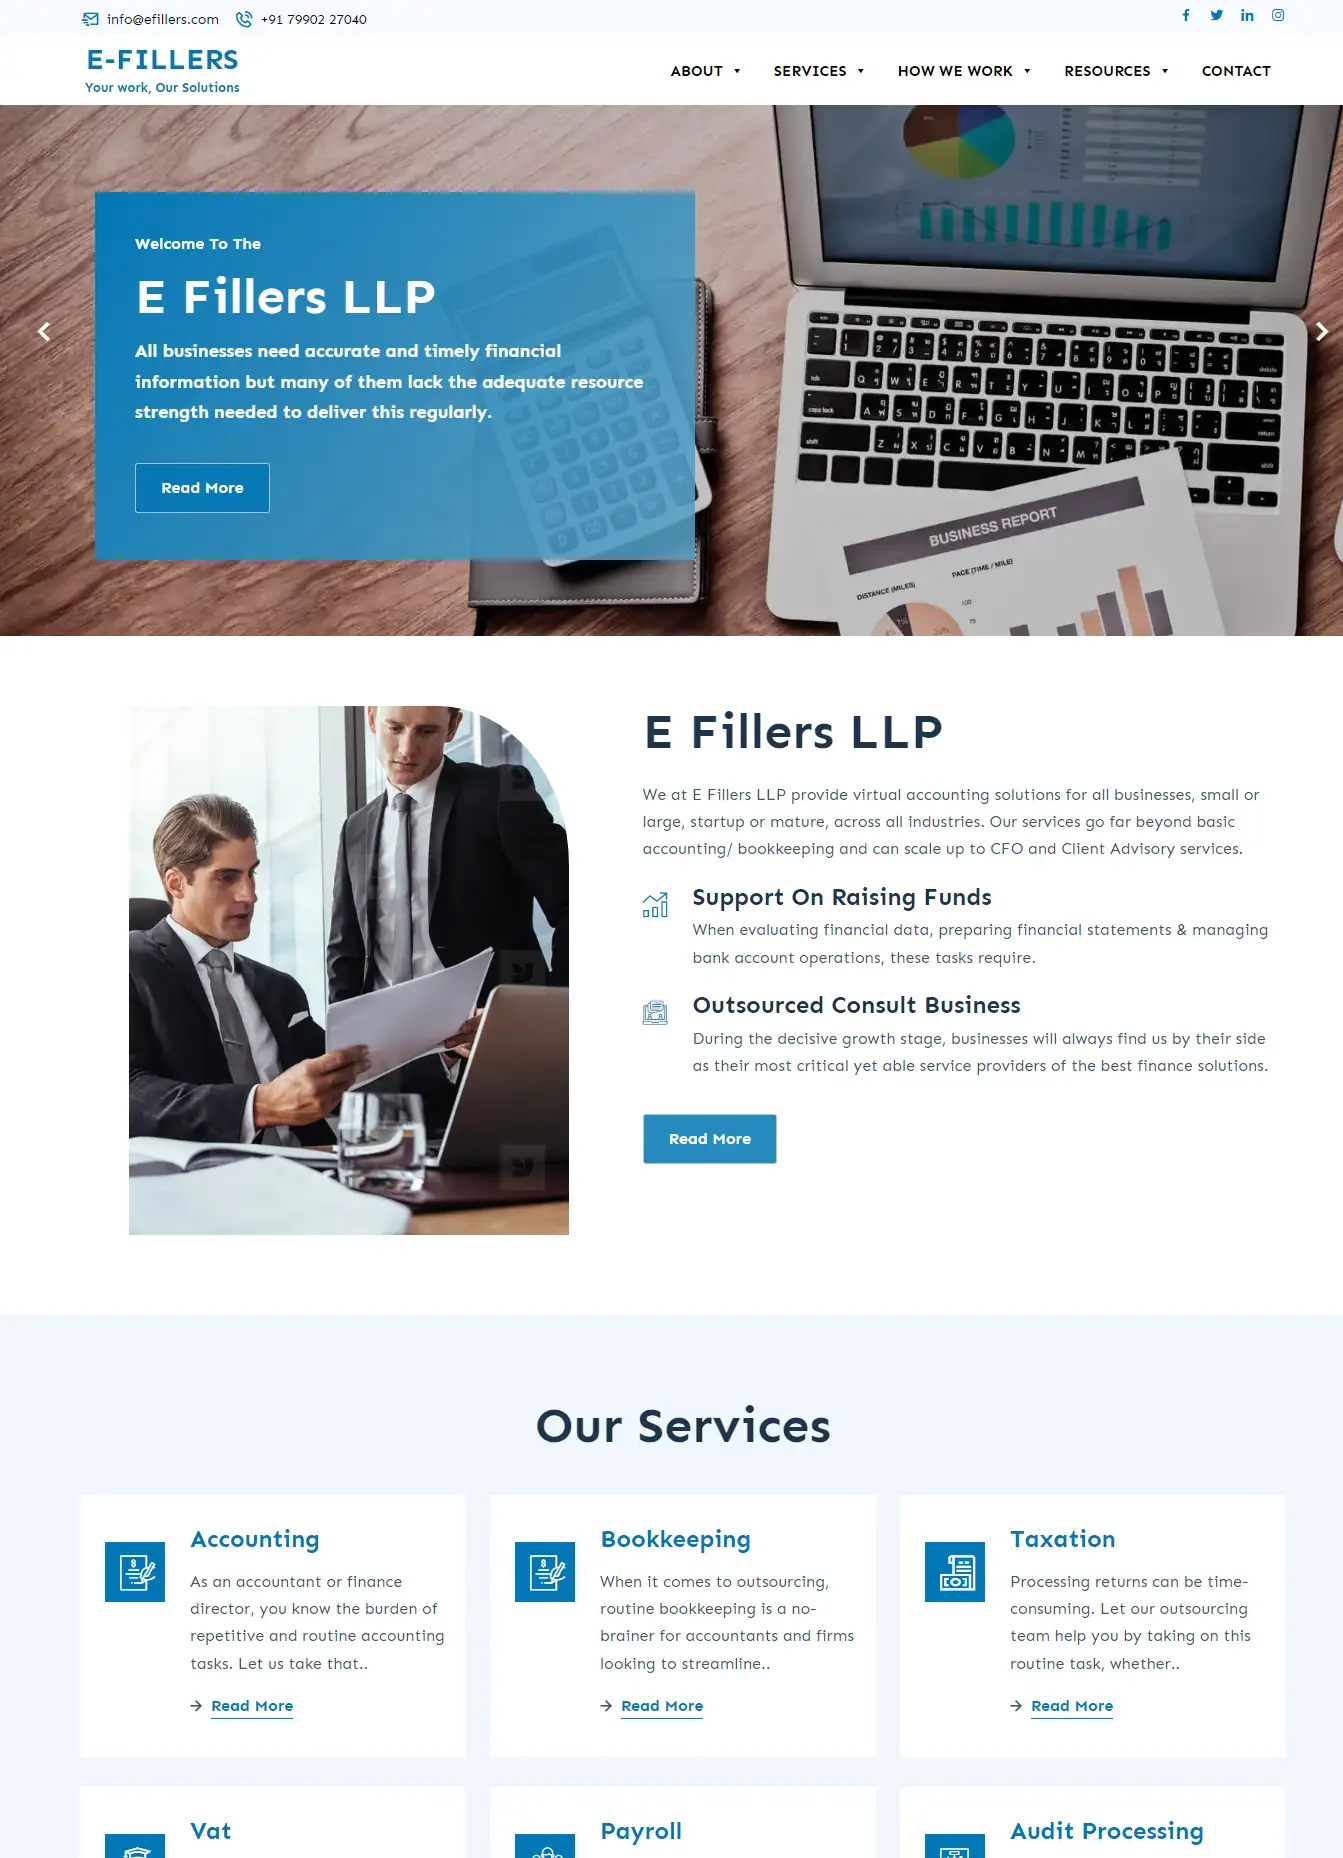 E-Filler - Portfolio Website